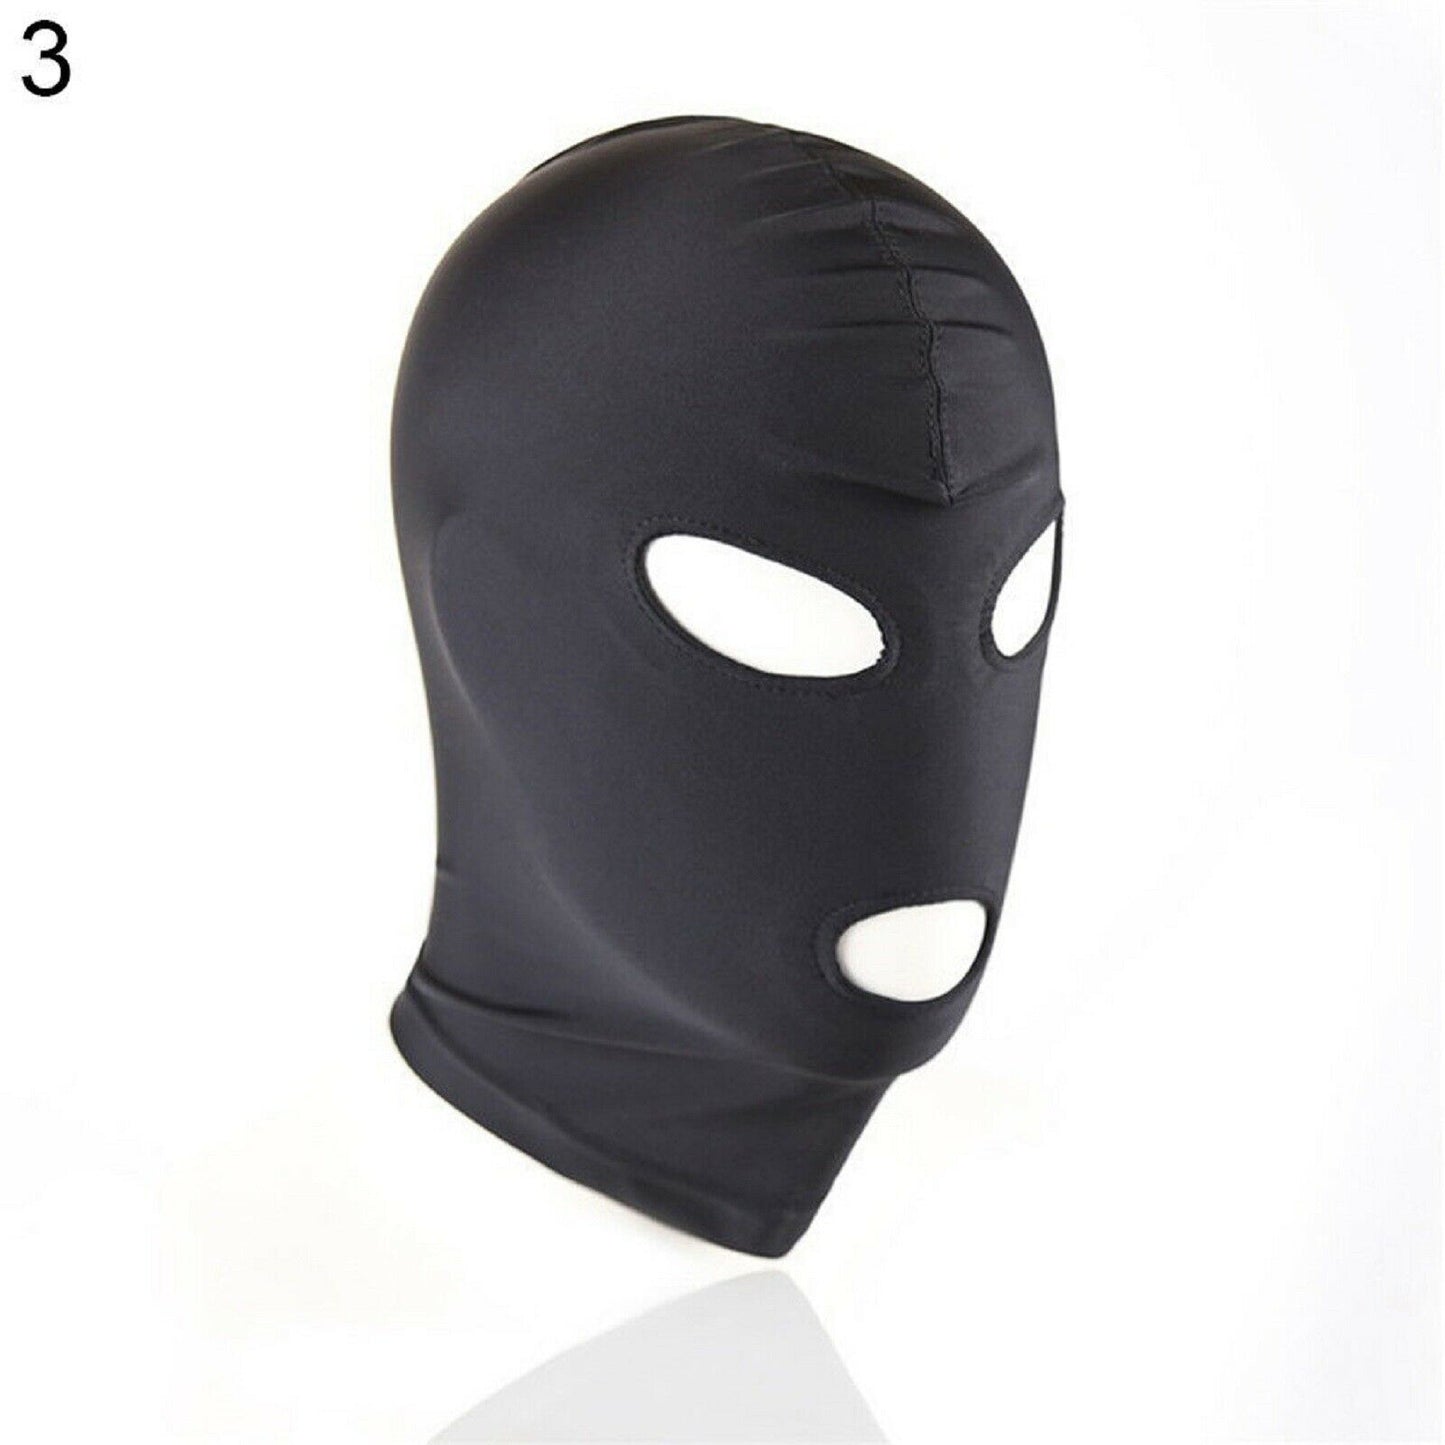 Bondage Hood Head Mask BDSM Conceal Identity Fetish Gay Sub Stretchy Sex Toy